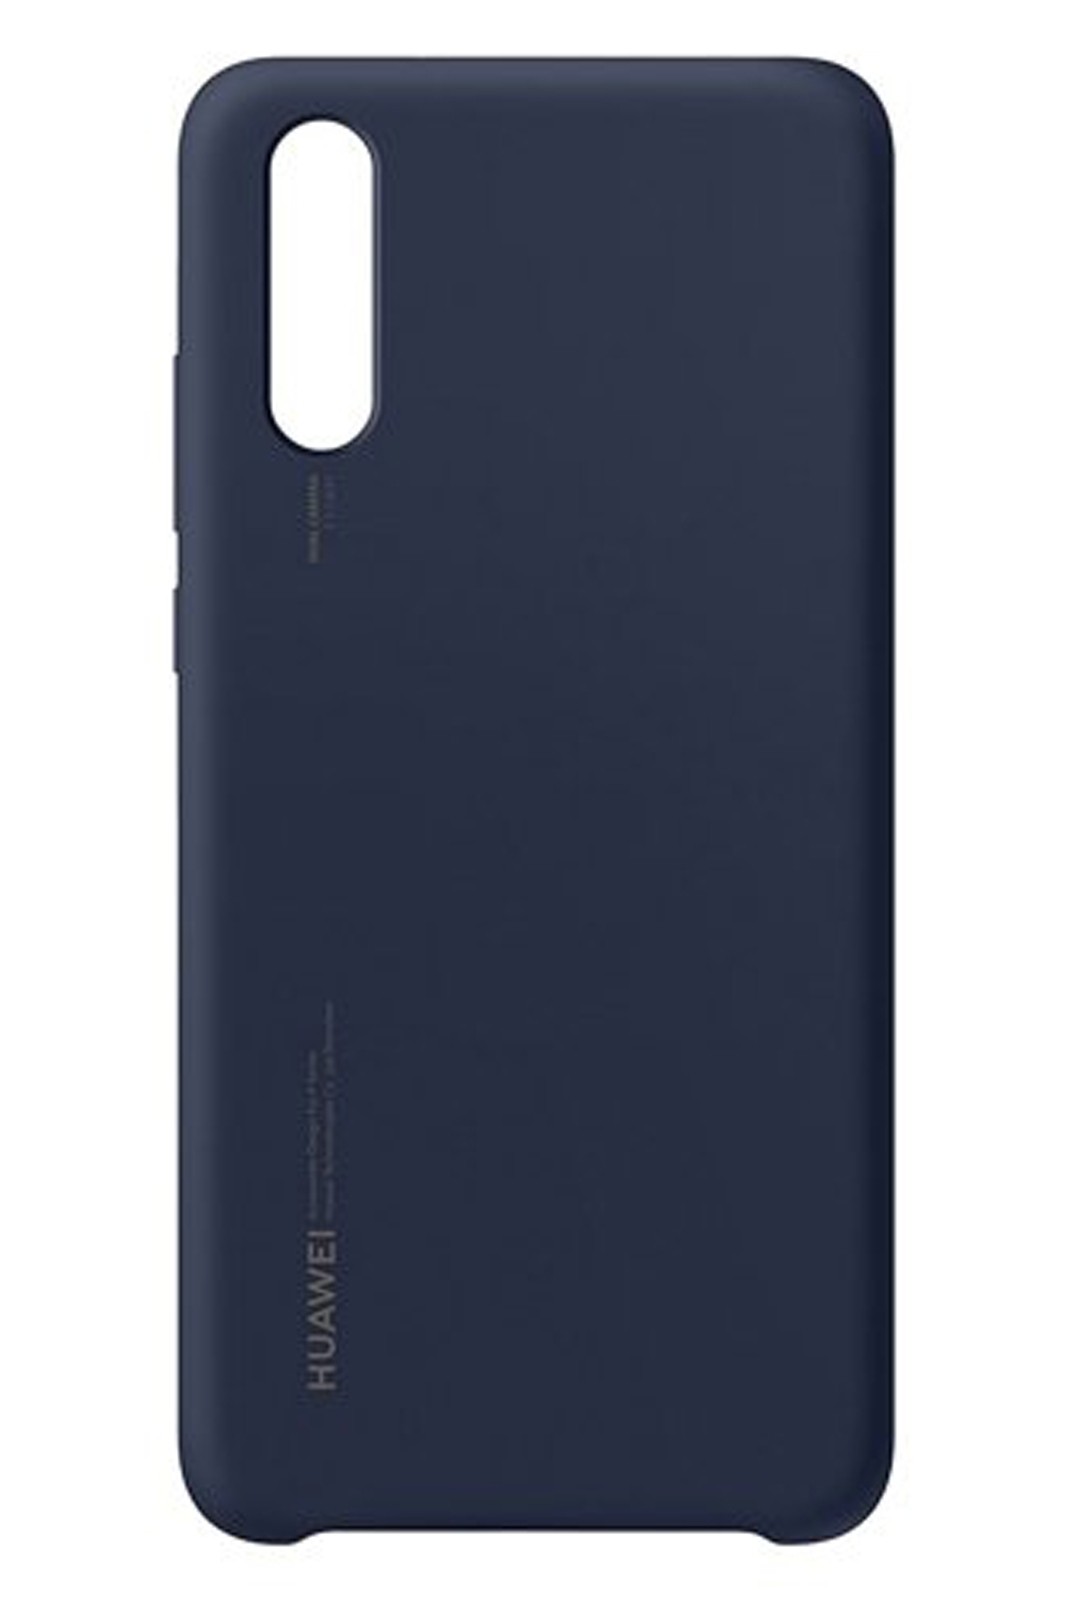 Γνήσια Θήκη Back Cover Σιλικόνης (TPU) Για το Huawei P20 5.8" Deep Blue 51992363 image